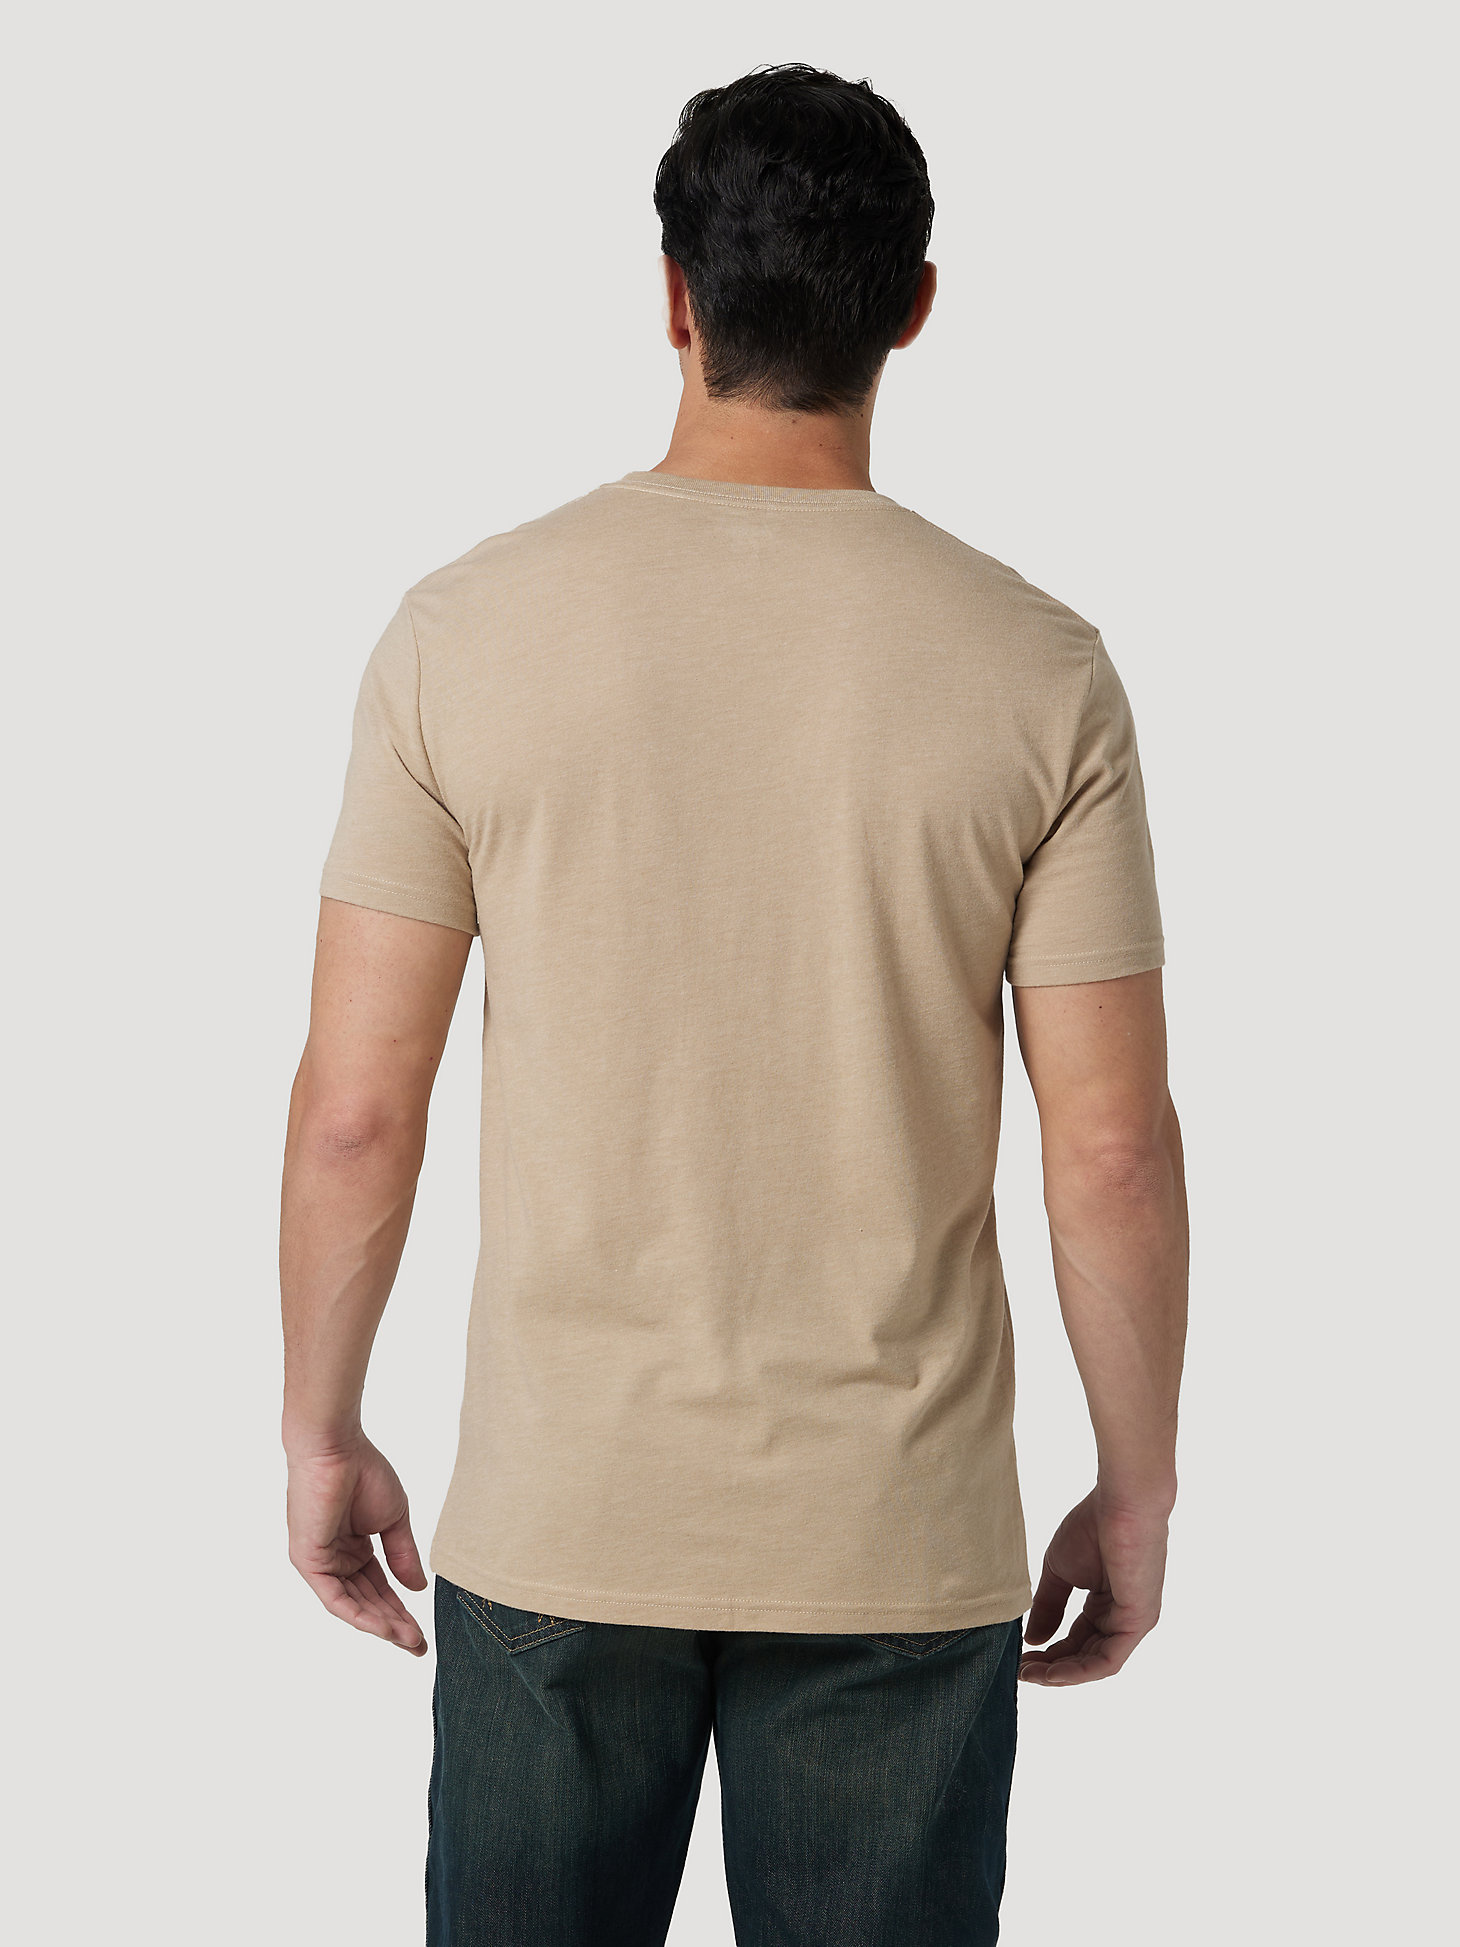 Men's Desert Landscape T-Shirt in Trenchcoat alternative view 1